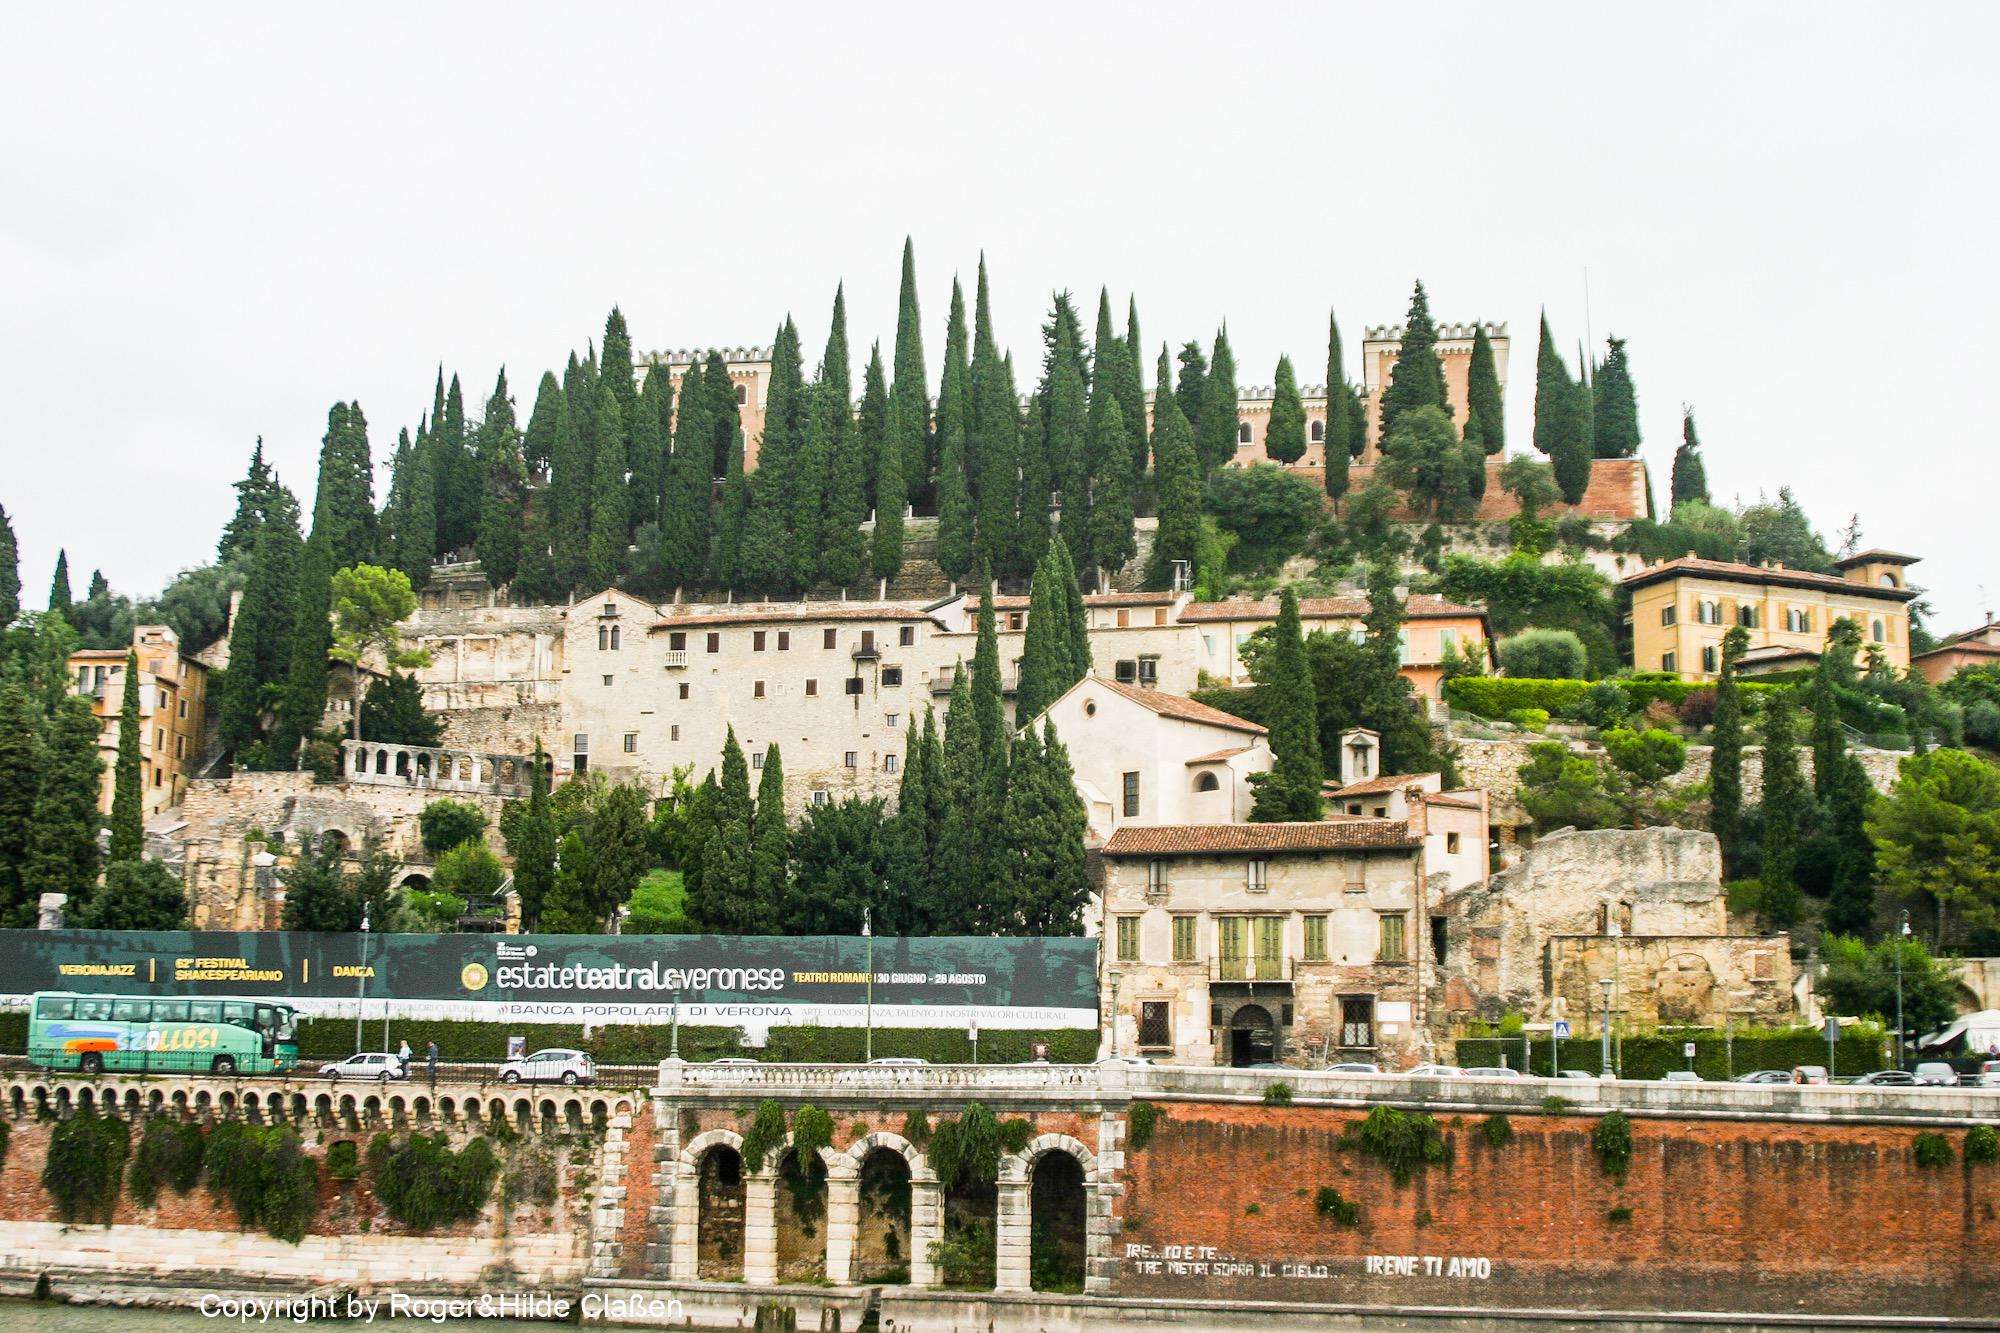 Das Castel San Pietro in Verona